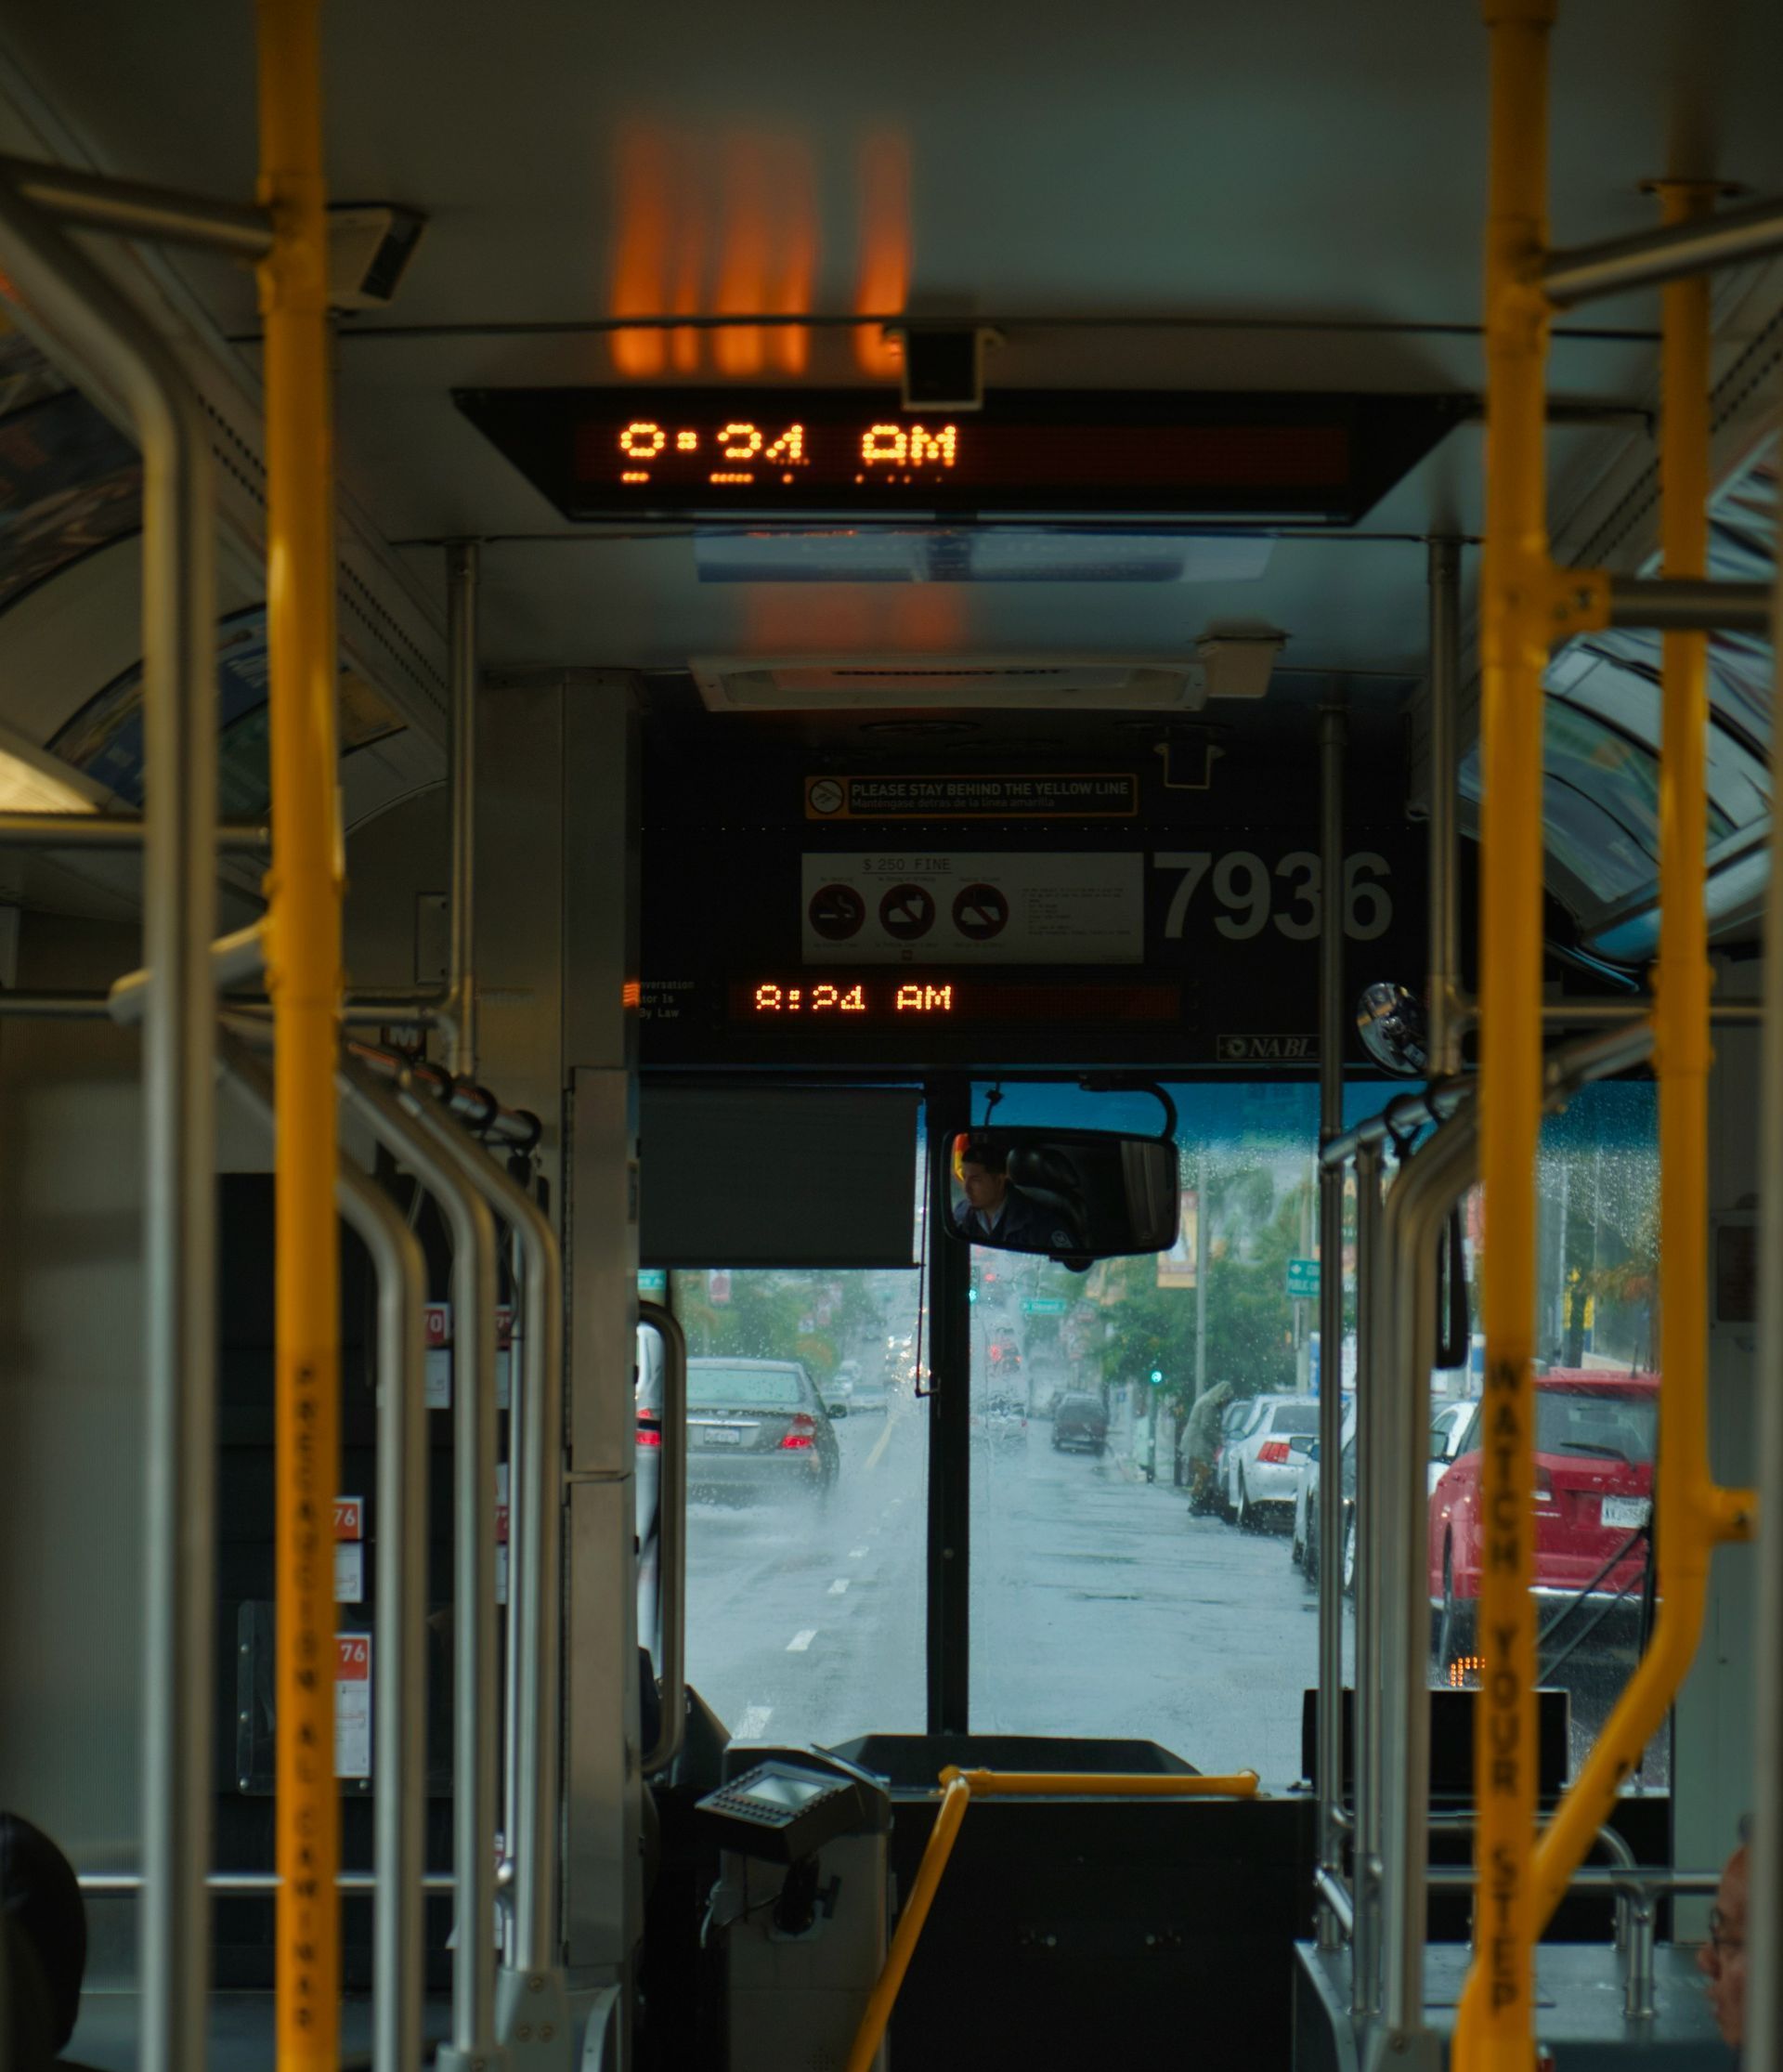 interior of bus